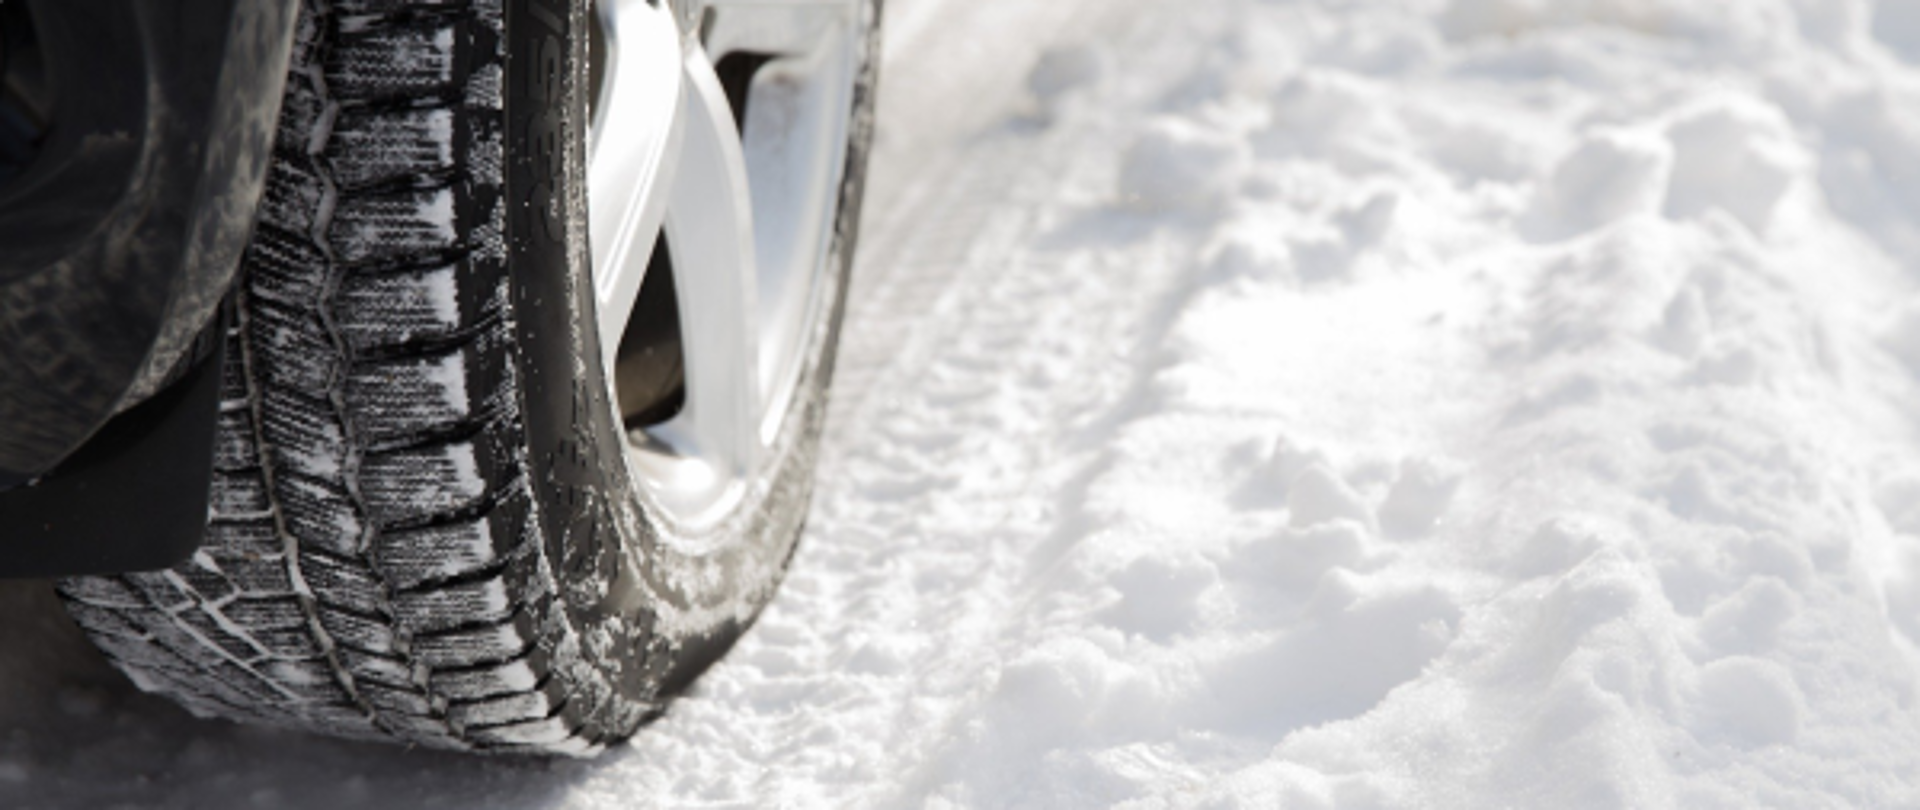 Zbliżenie na koło samochodu na pokrytej śniegiem drodze